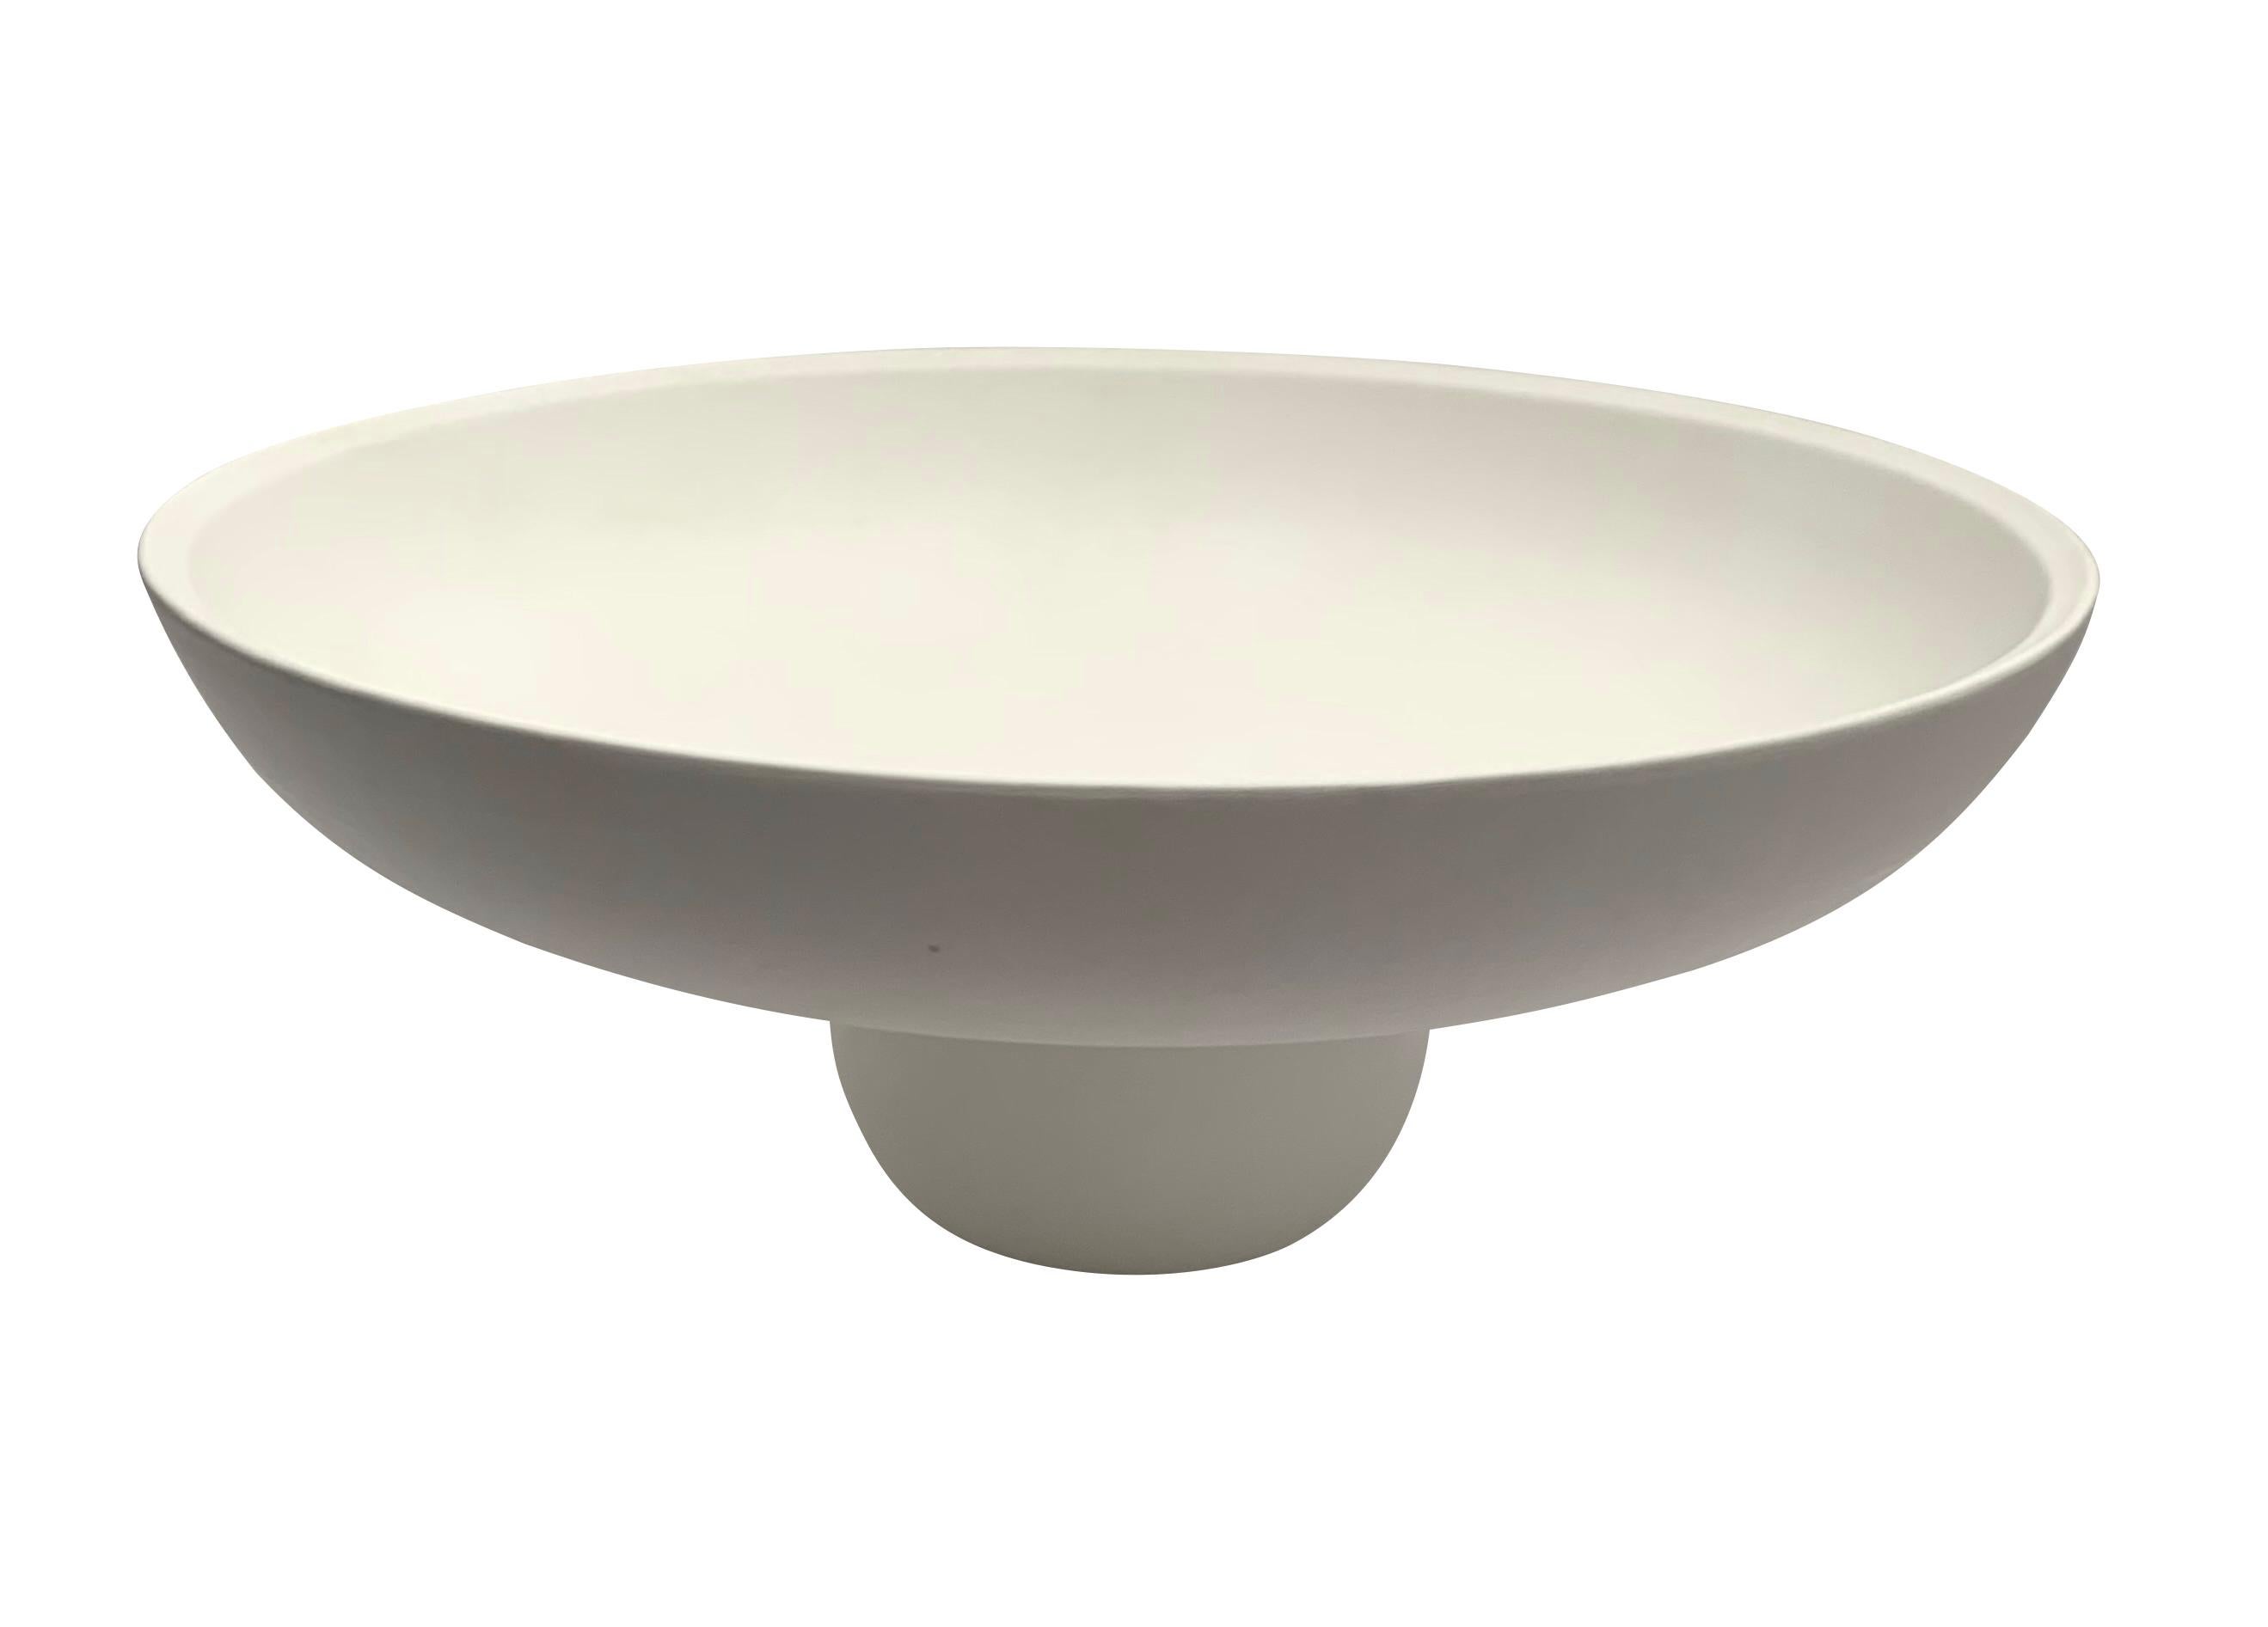 Große, runde, weiße Keramikschüssel mit Fuß im zeitgenössischen dänischen Design.
Der Sockel ist zylinderförmig.
